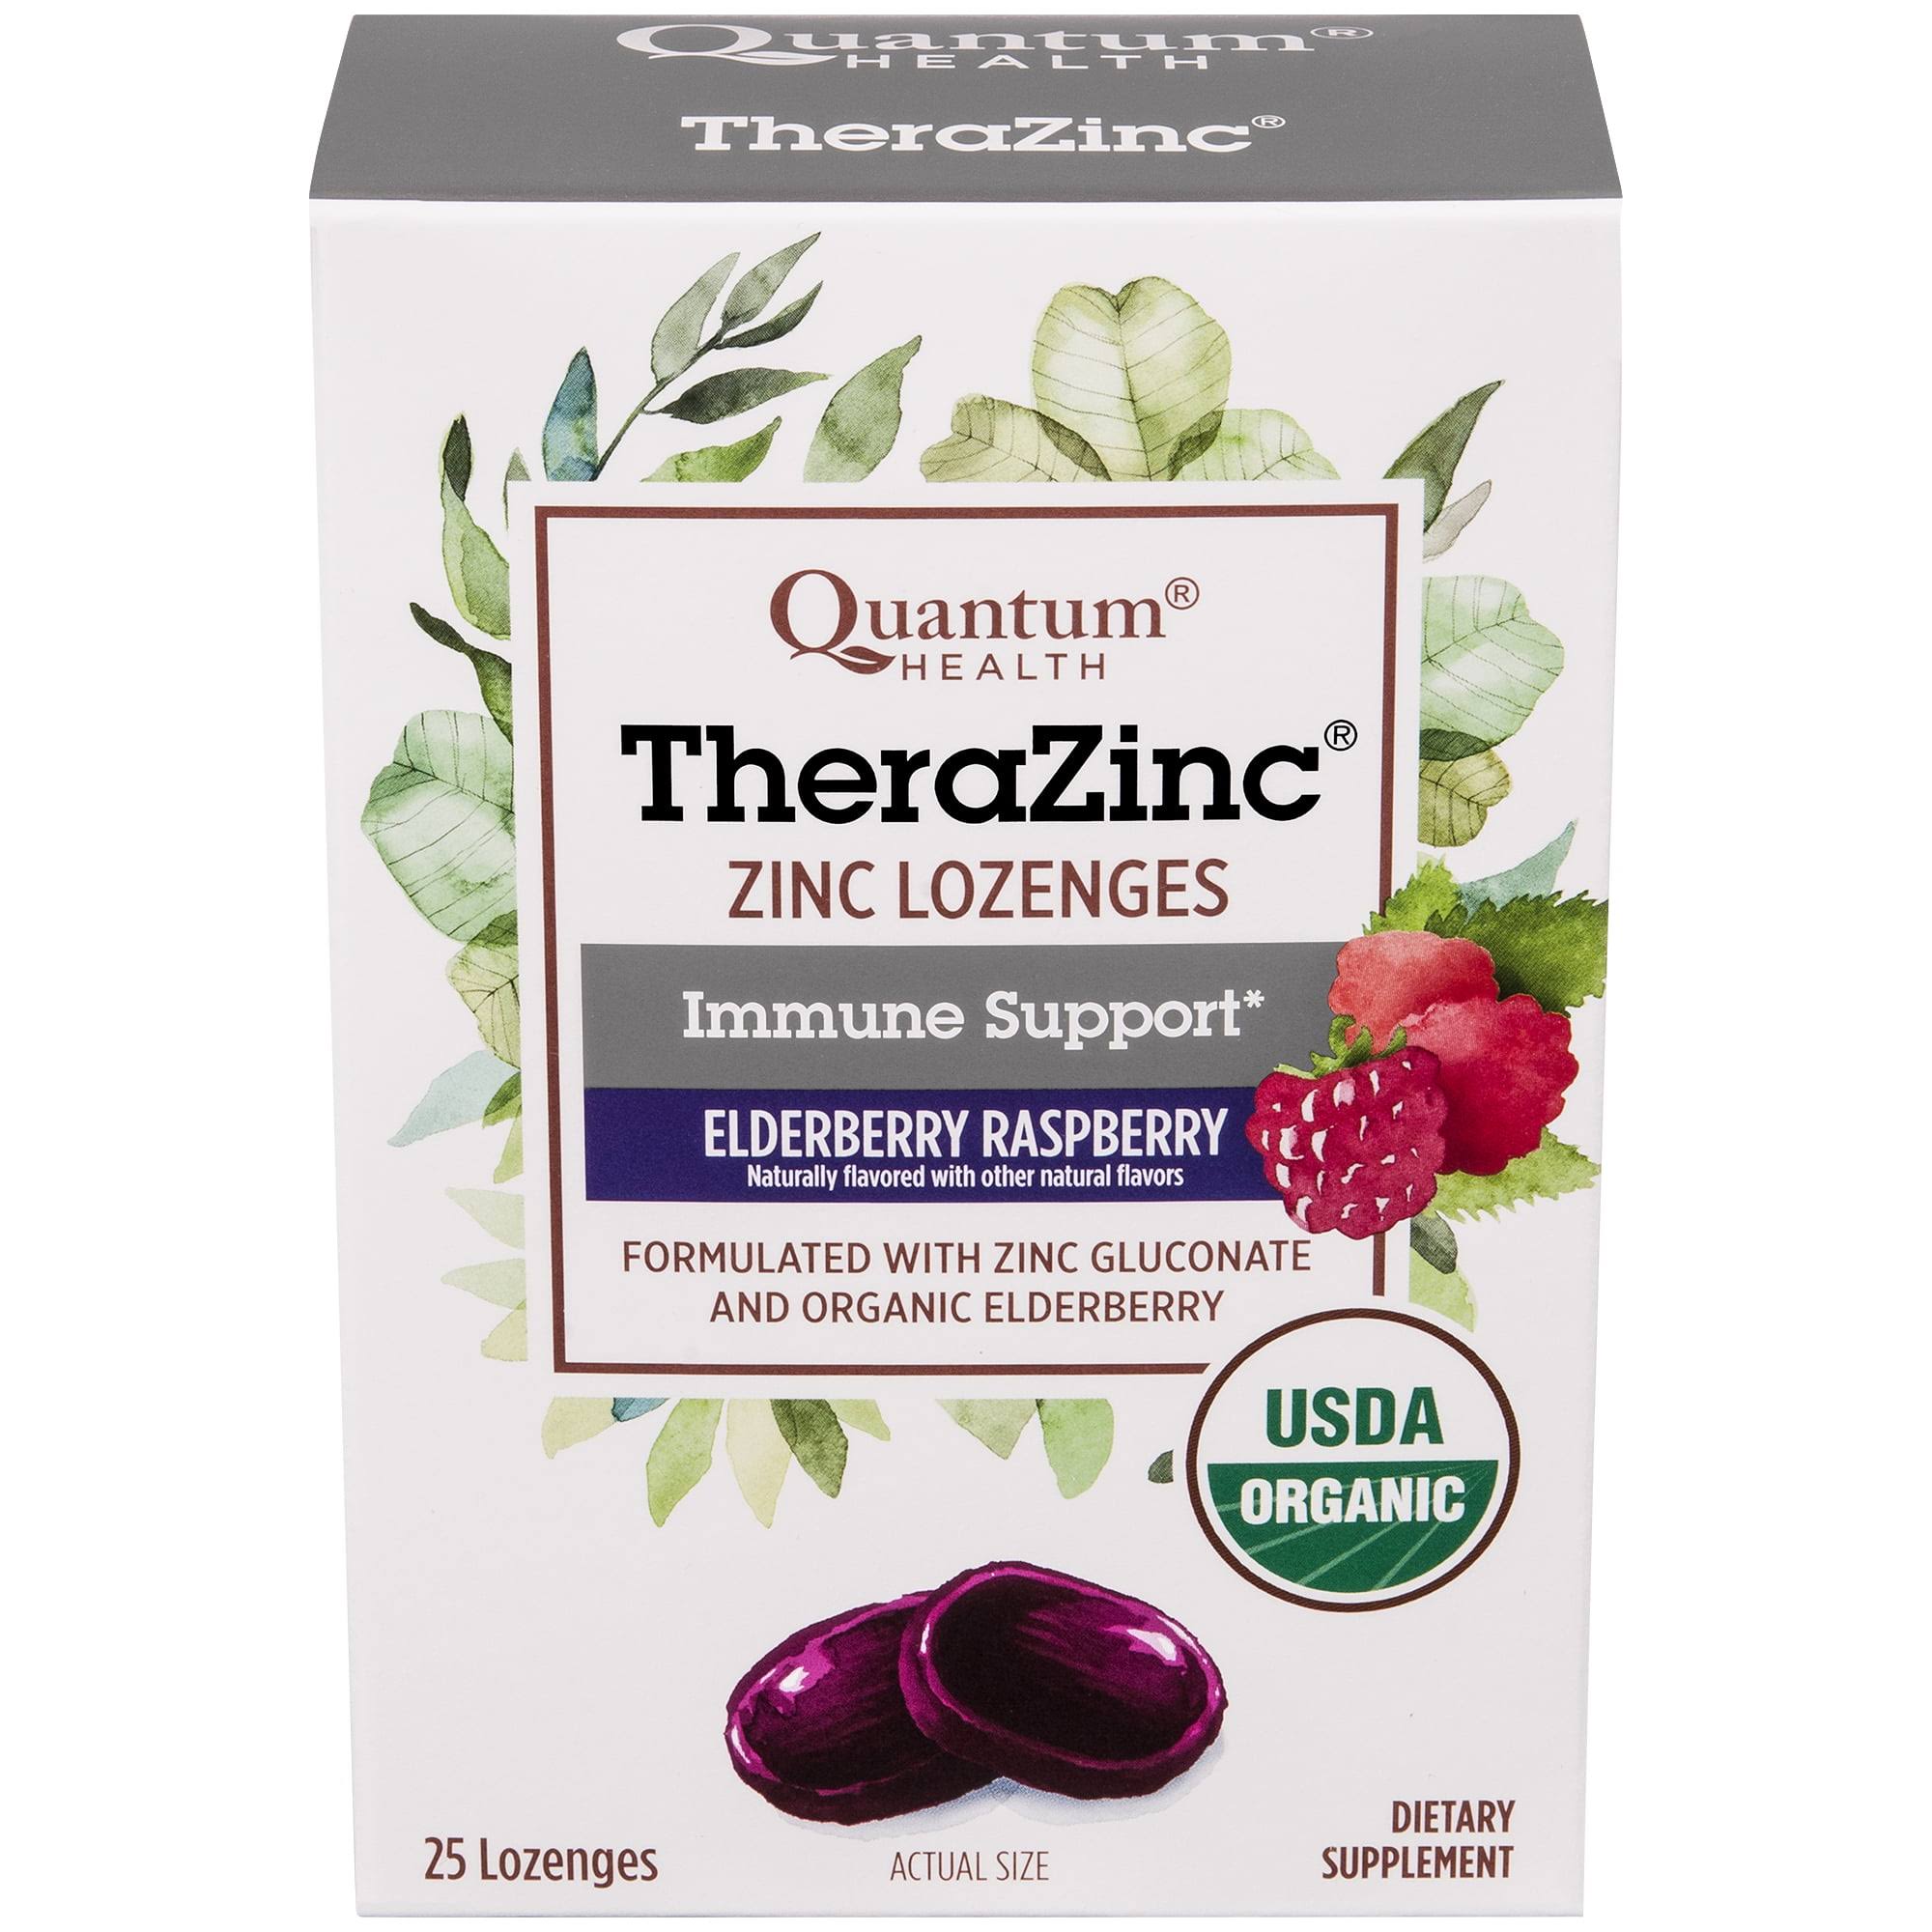 Quantum Health TheraZinc Zinc Lozenges, Elderberry Raspberry - 25 lozenges